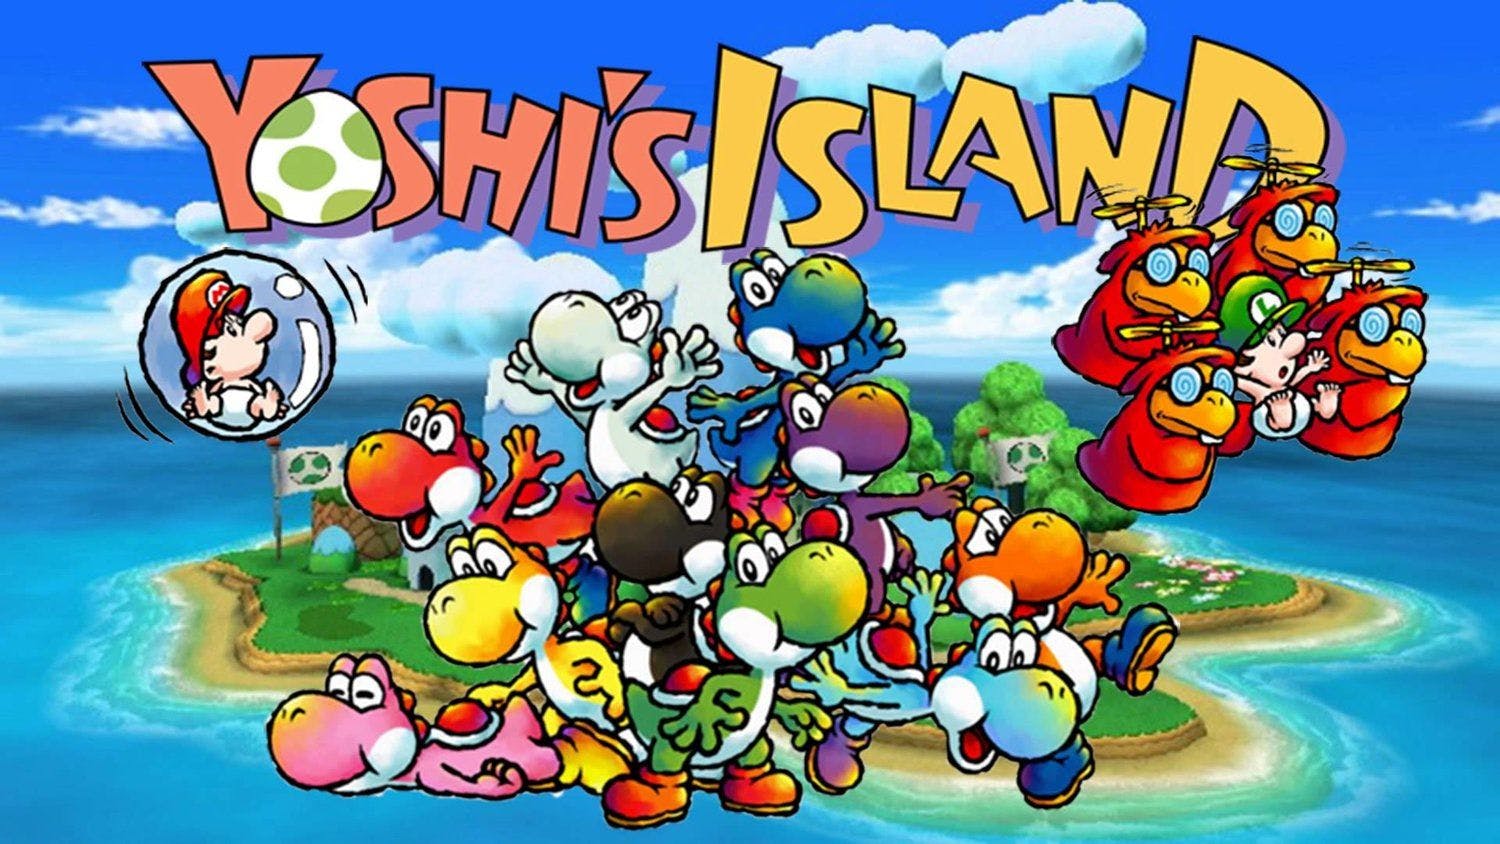 Yoshi's Island Banner Image